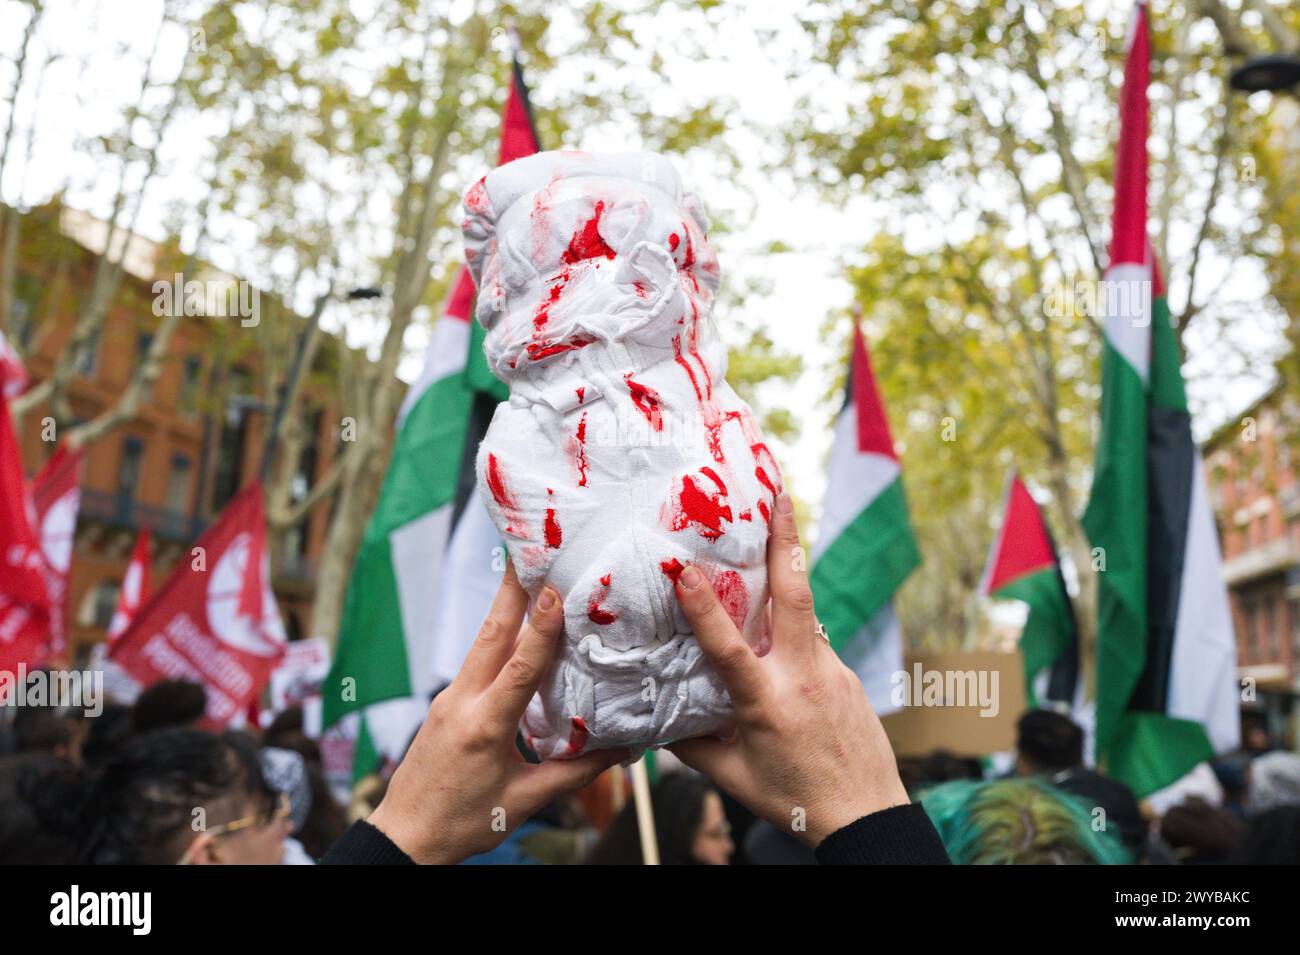 Una donna tiene a braccio una copertura colorata di rosso, che rappresenta un bambino morto, con bandiere palestinesi sullo sfondo.Patricia Huchot-Boissier Foto Stock